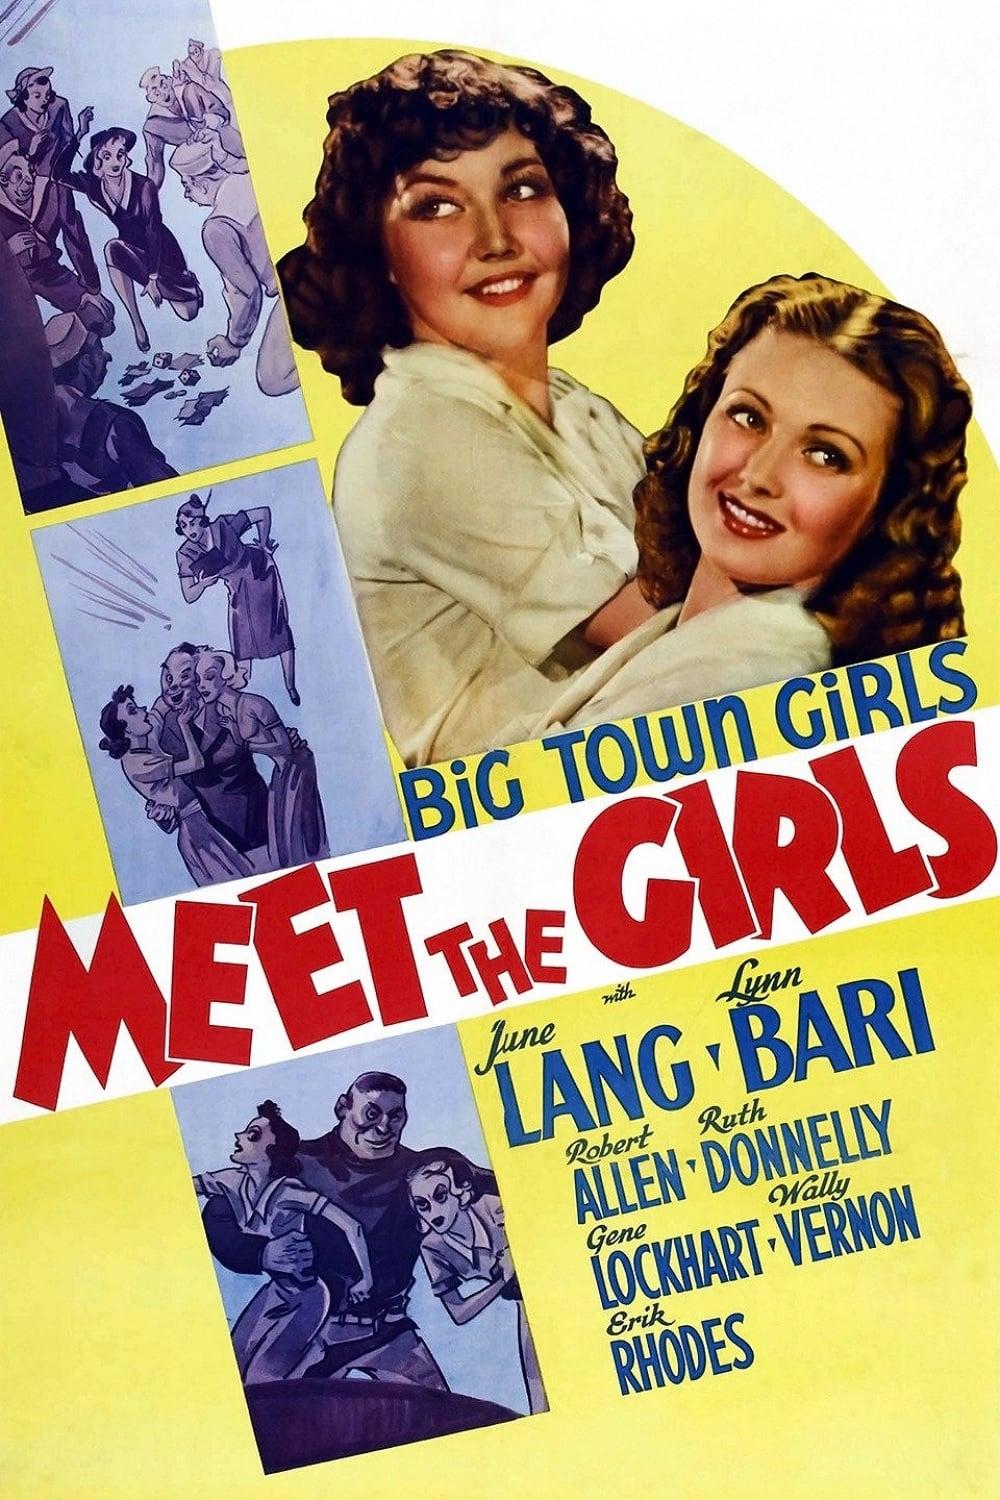 Meet the Girls poster